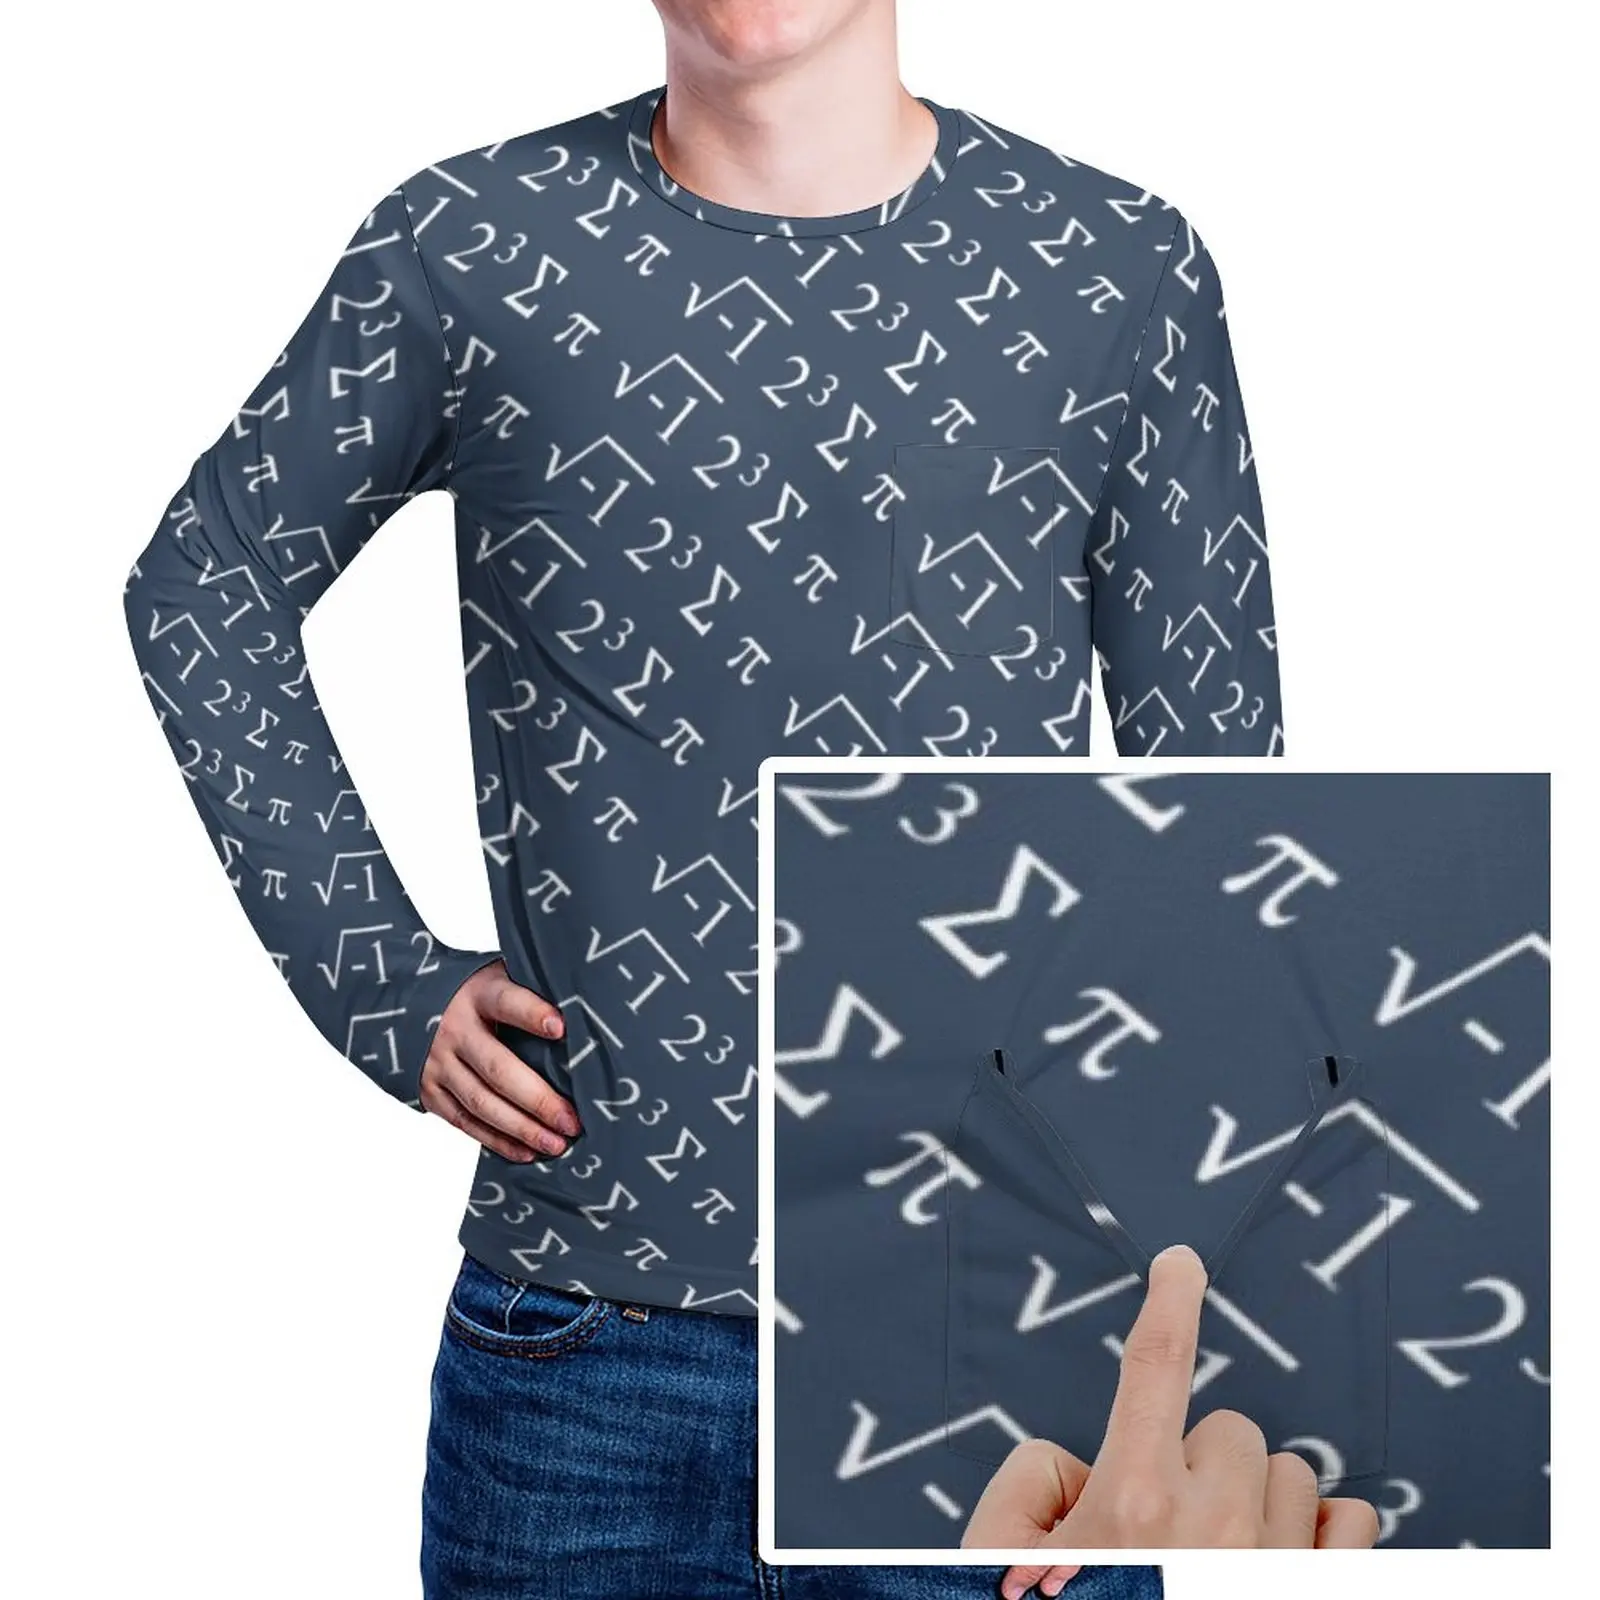 

Футболка мужская с забавным математическим принтом I 8 Sum Pi, Потрясающая рубашка с графическим принтом в стиле хиппи, 3XL, 4XL, 5XL, на осень